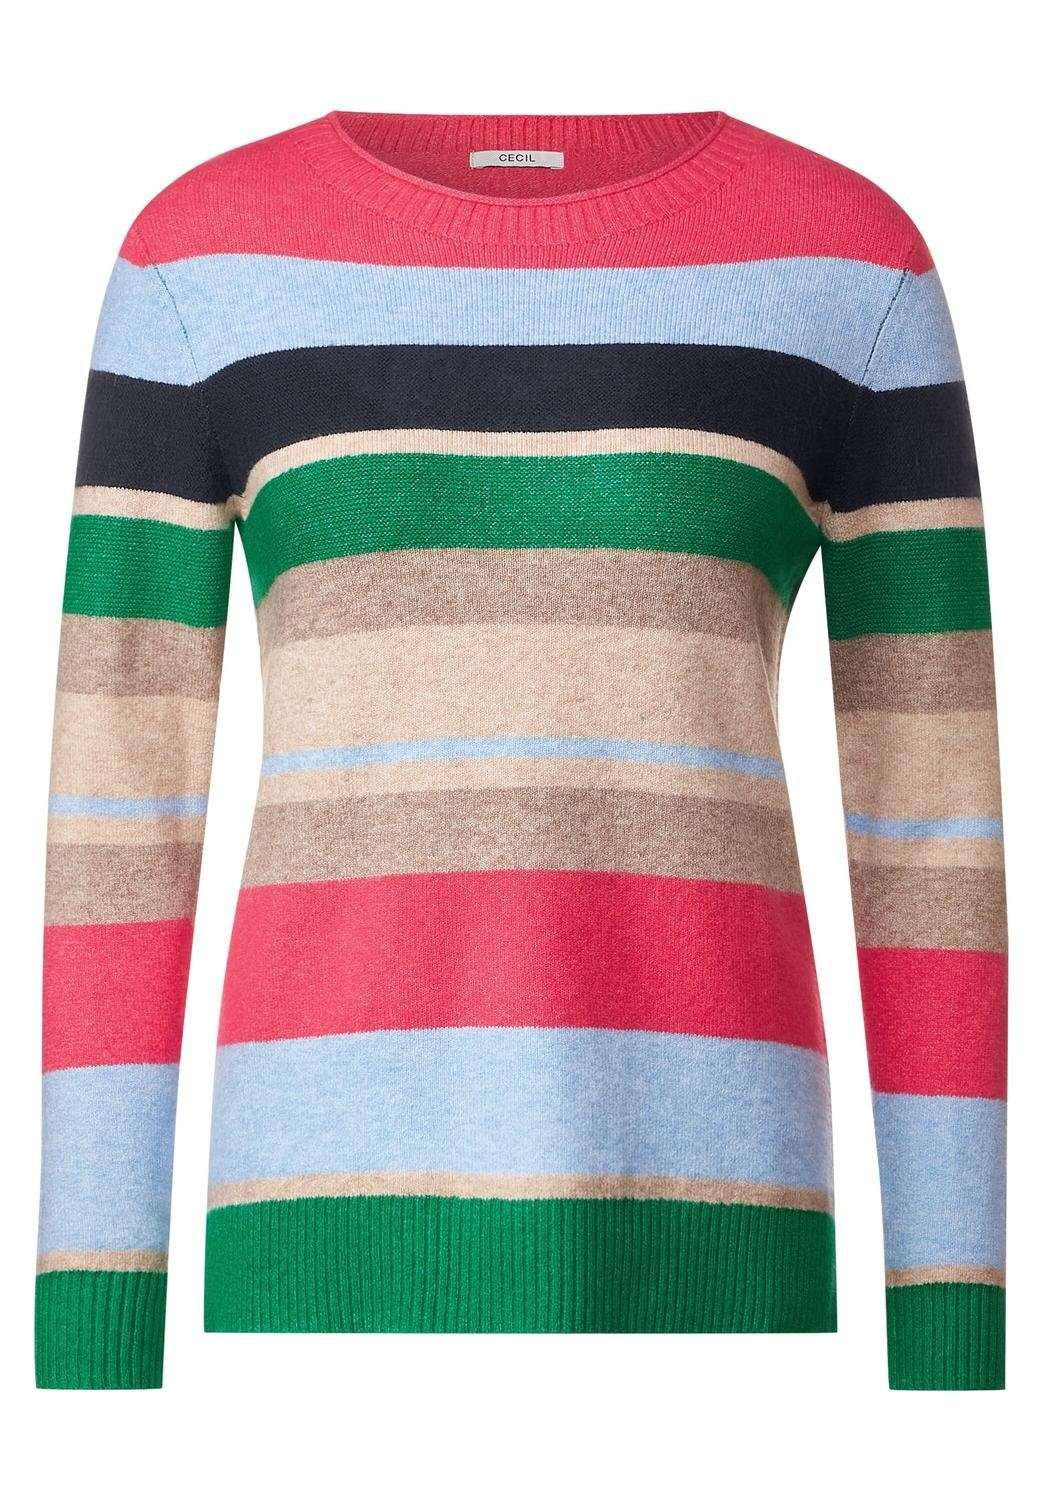 Вязаный свитер уютный полосатый свитер микс в разноцветную полоску